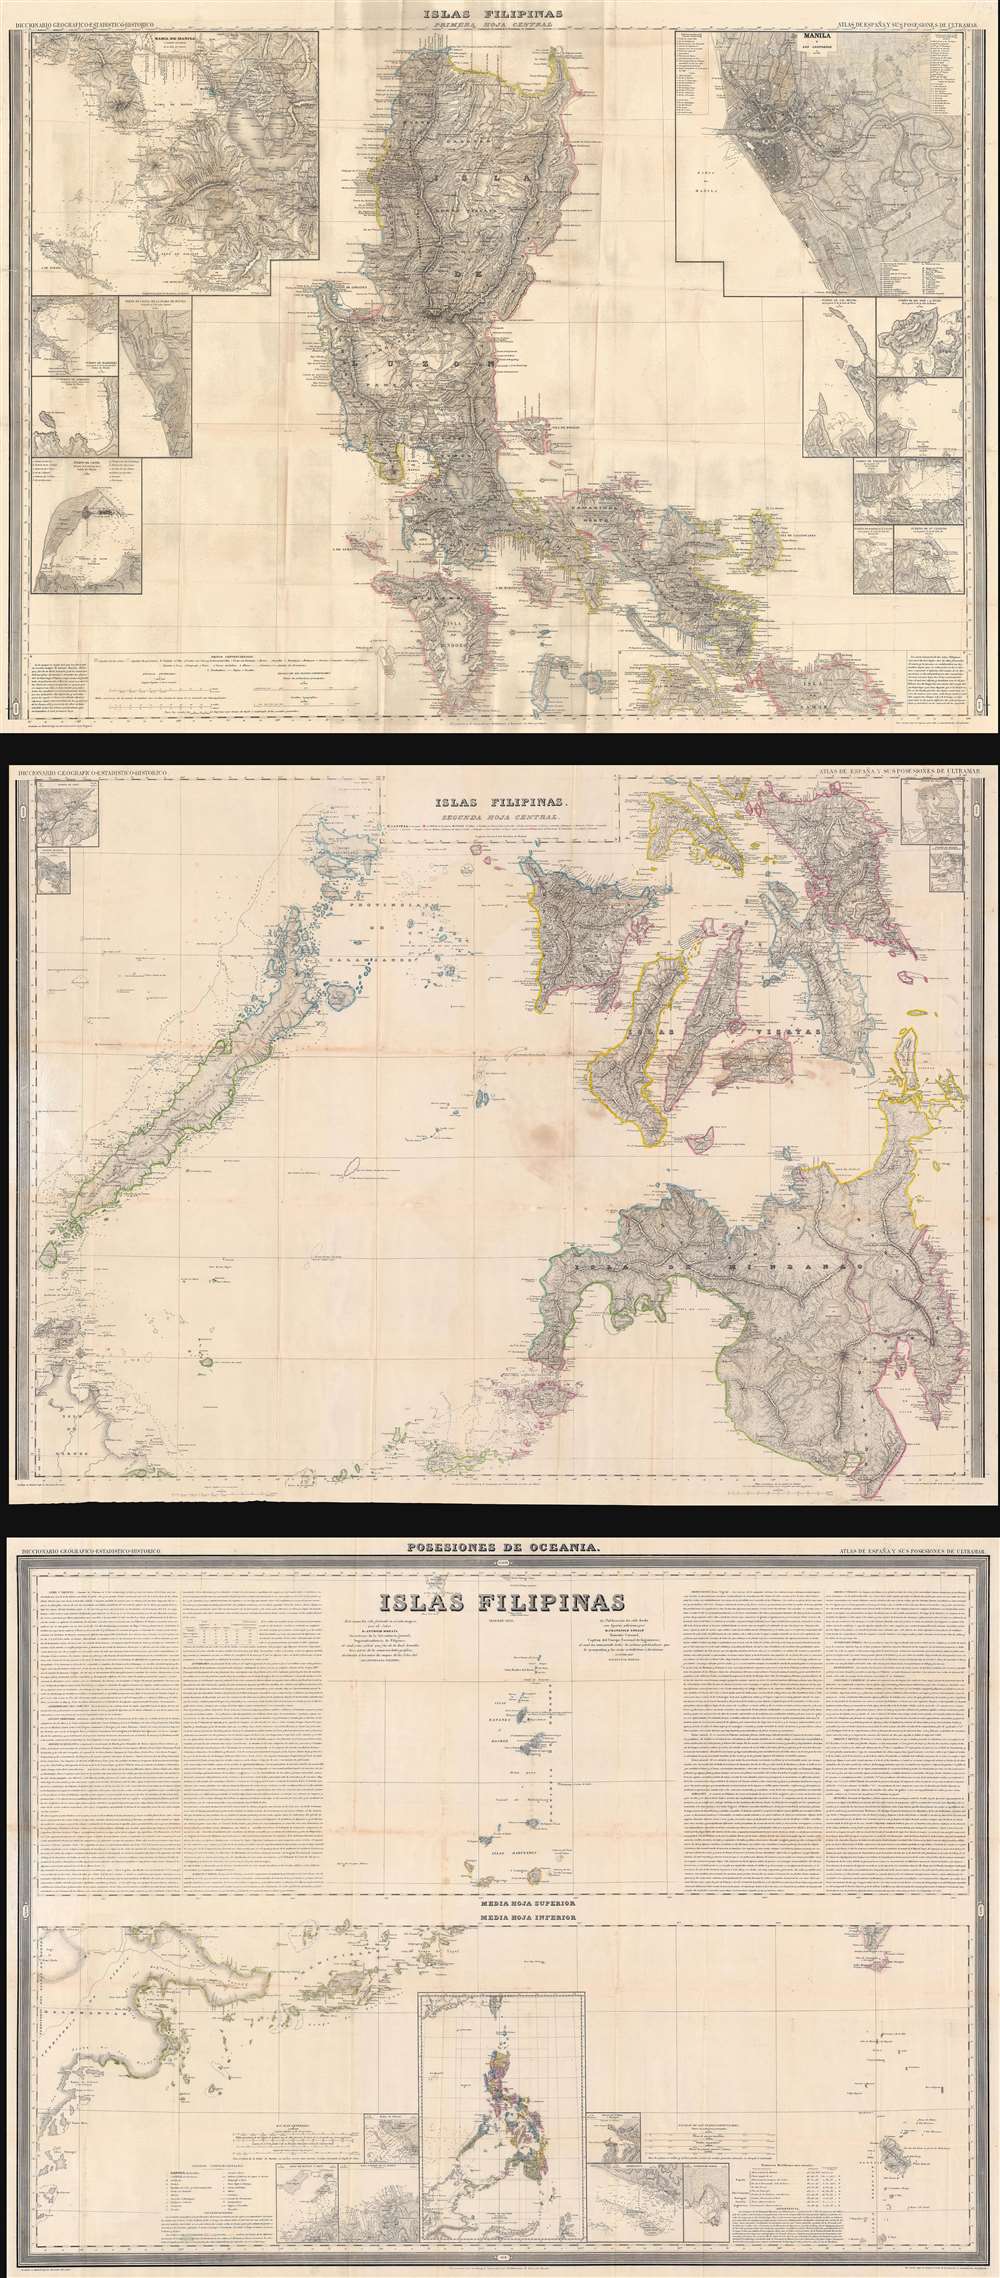 Islas Filipinas Primera Hoja Central. Islas Filipinas Segunda Hoja Central. Posesiones de Oceania. Islas Filipinas. Atlas de España y sus Posesiones de Ultramar. - Main View